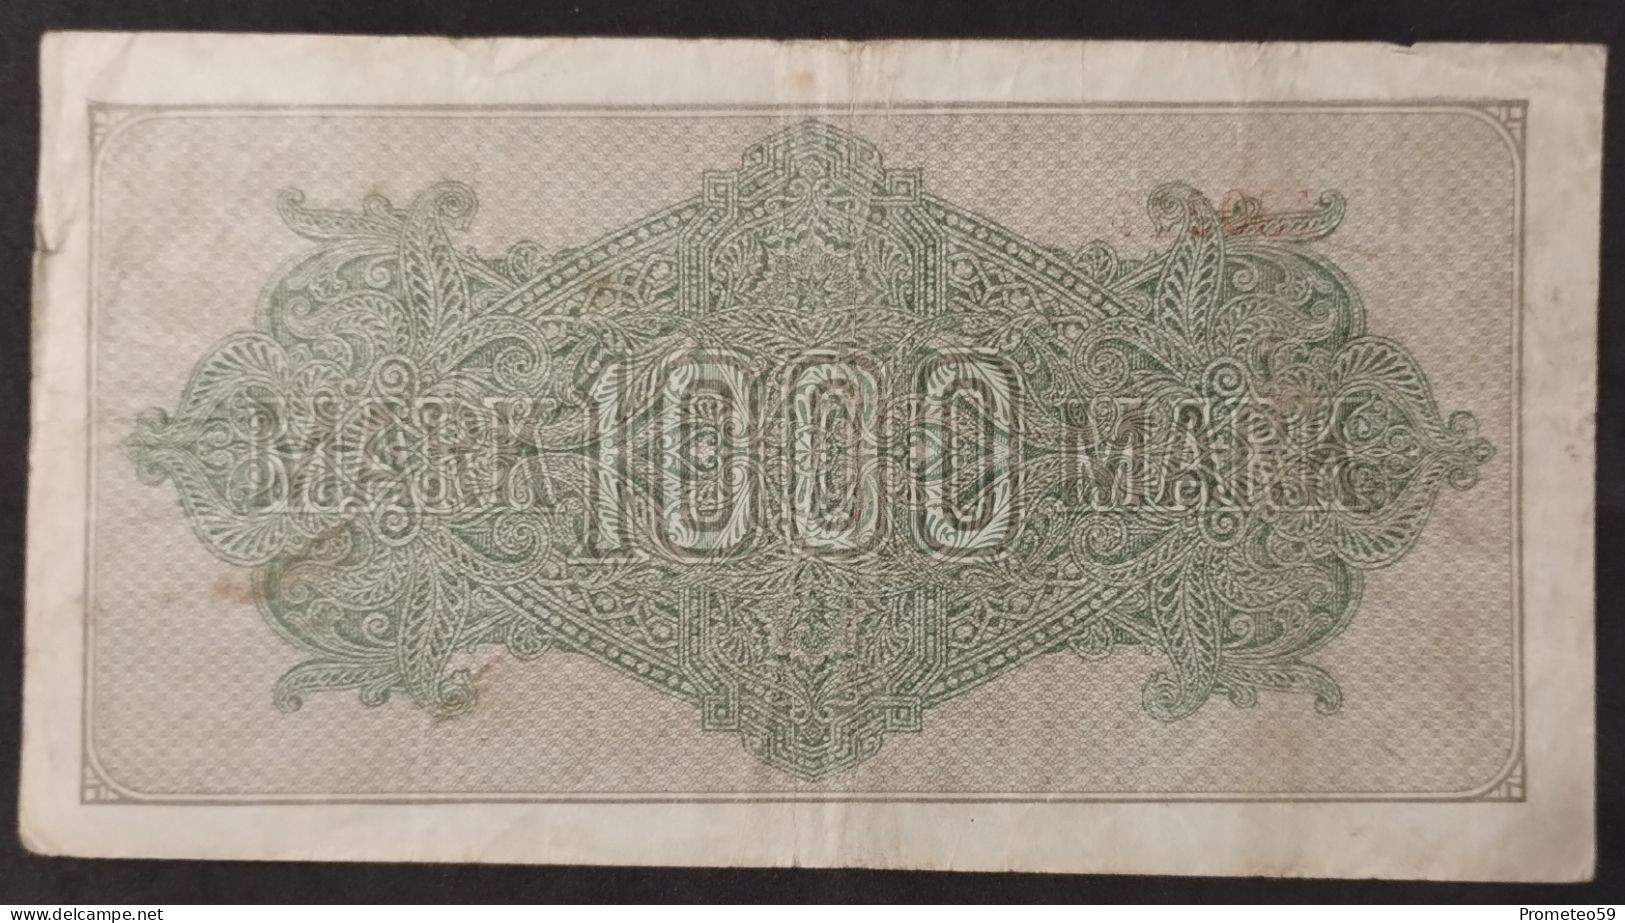 Alemania (Germany) – Billete Banknote De 1.000 Mark – 15.9.1922 - 1000 Mark